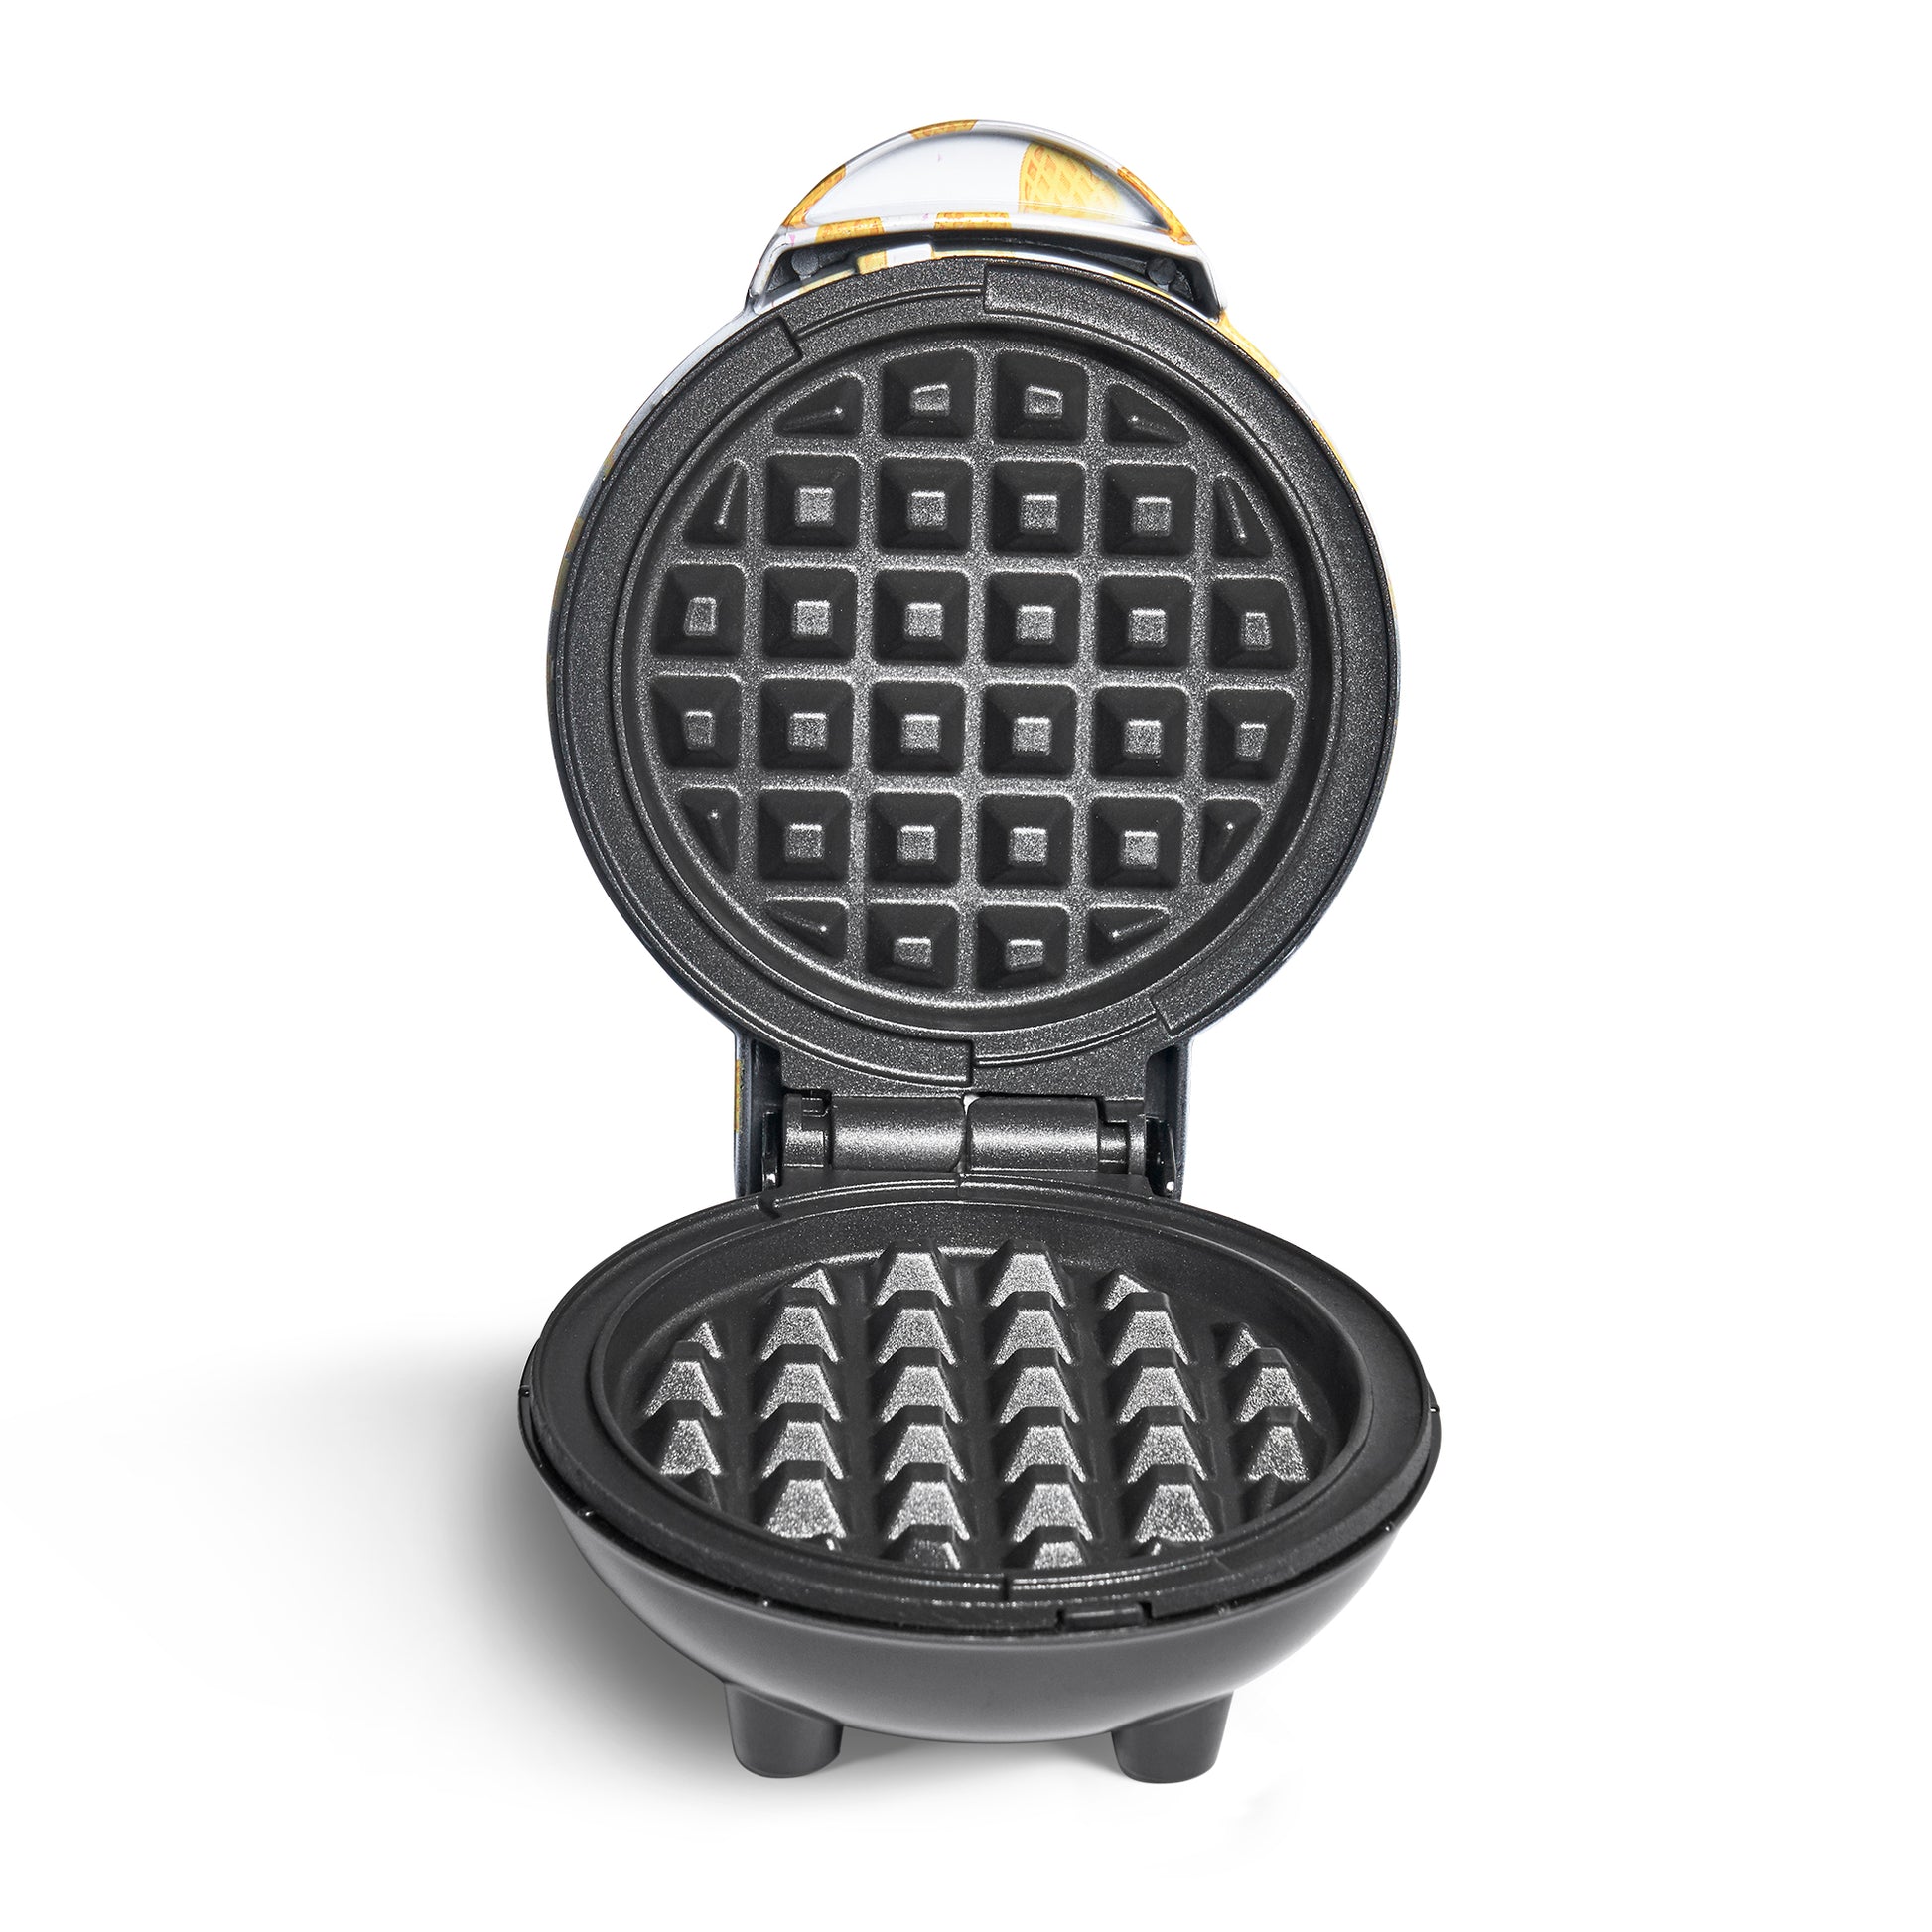 Mini Waffle Maker, Small Waffles Iron Keto Chaffles Single Compact